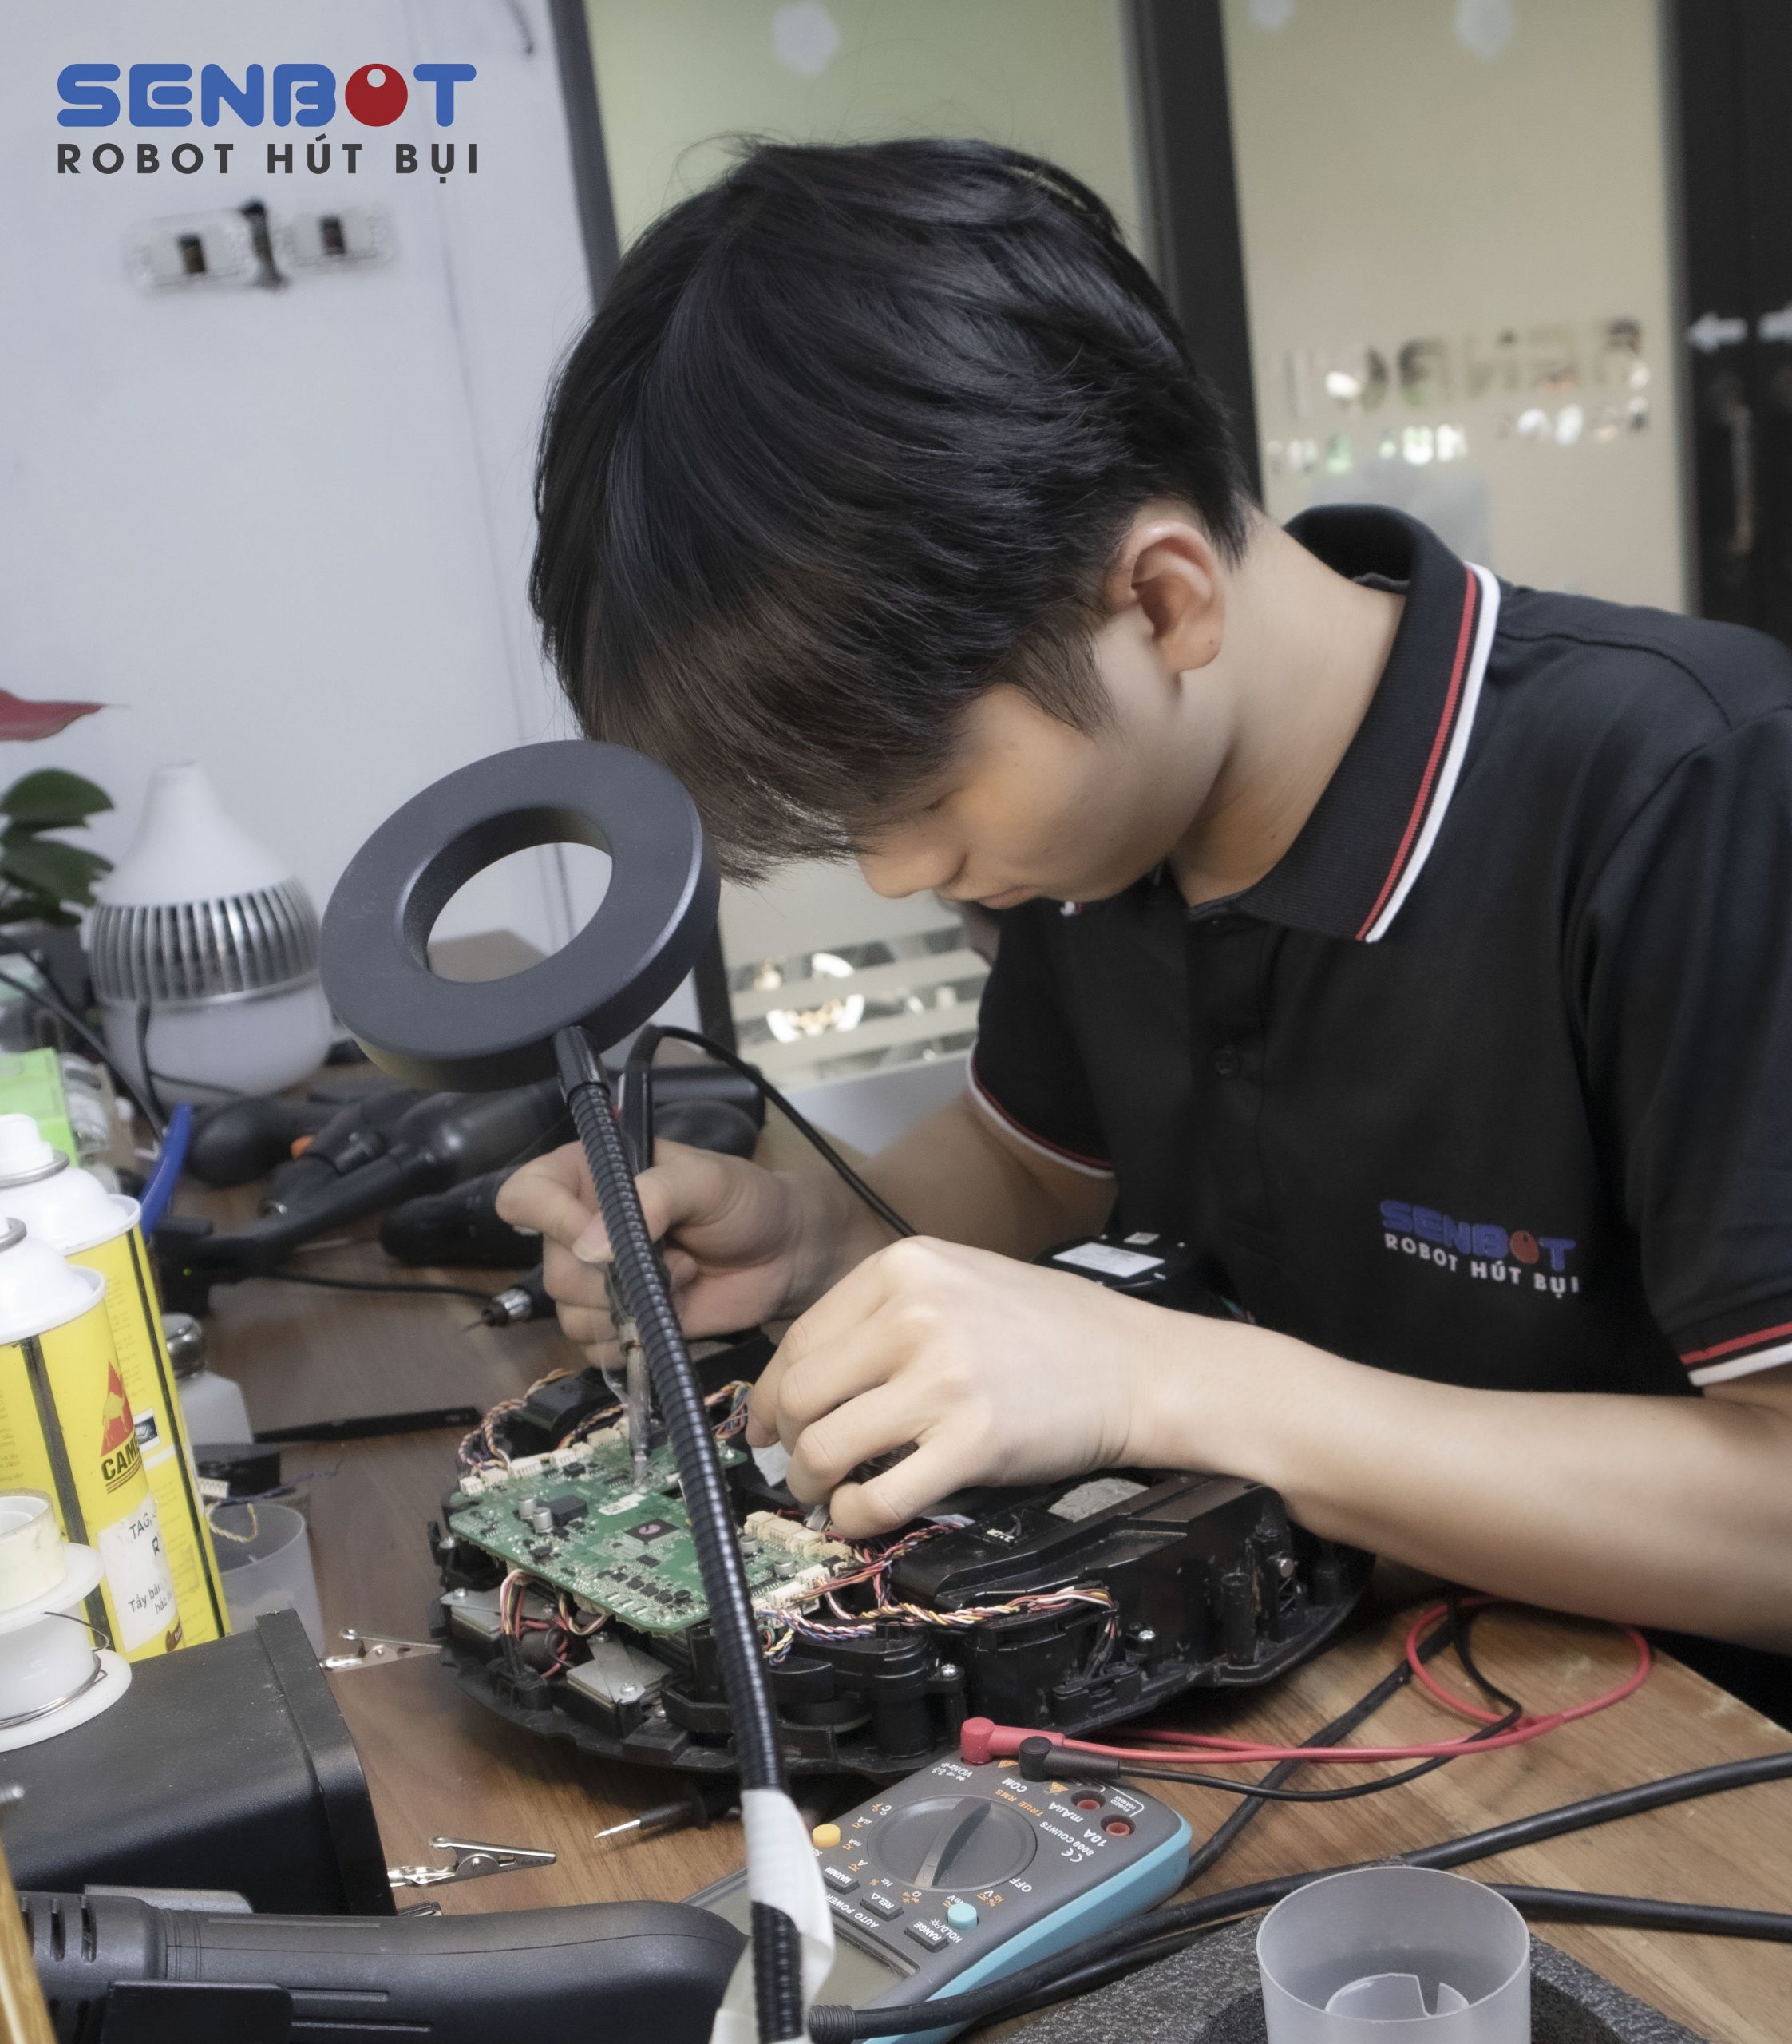 Cửa hàng sửa chữa robot hút bụi Senbot 